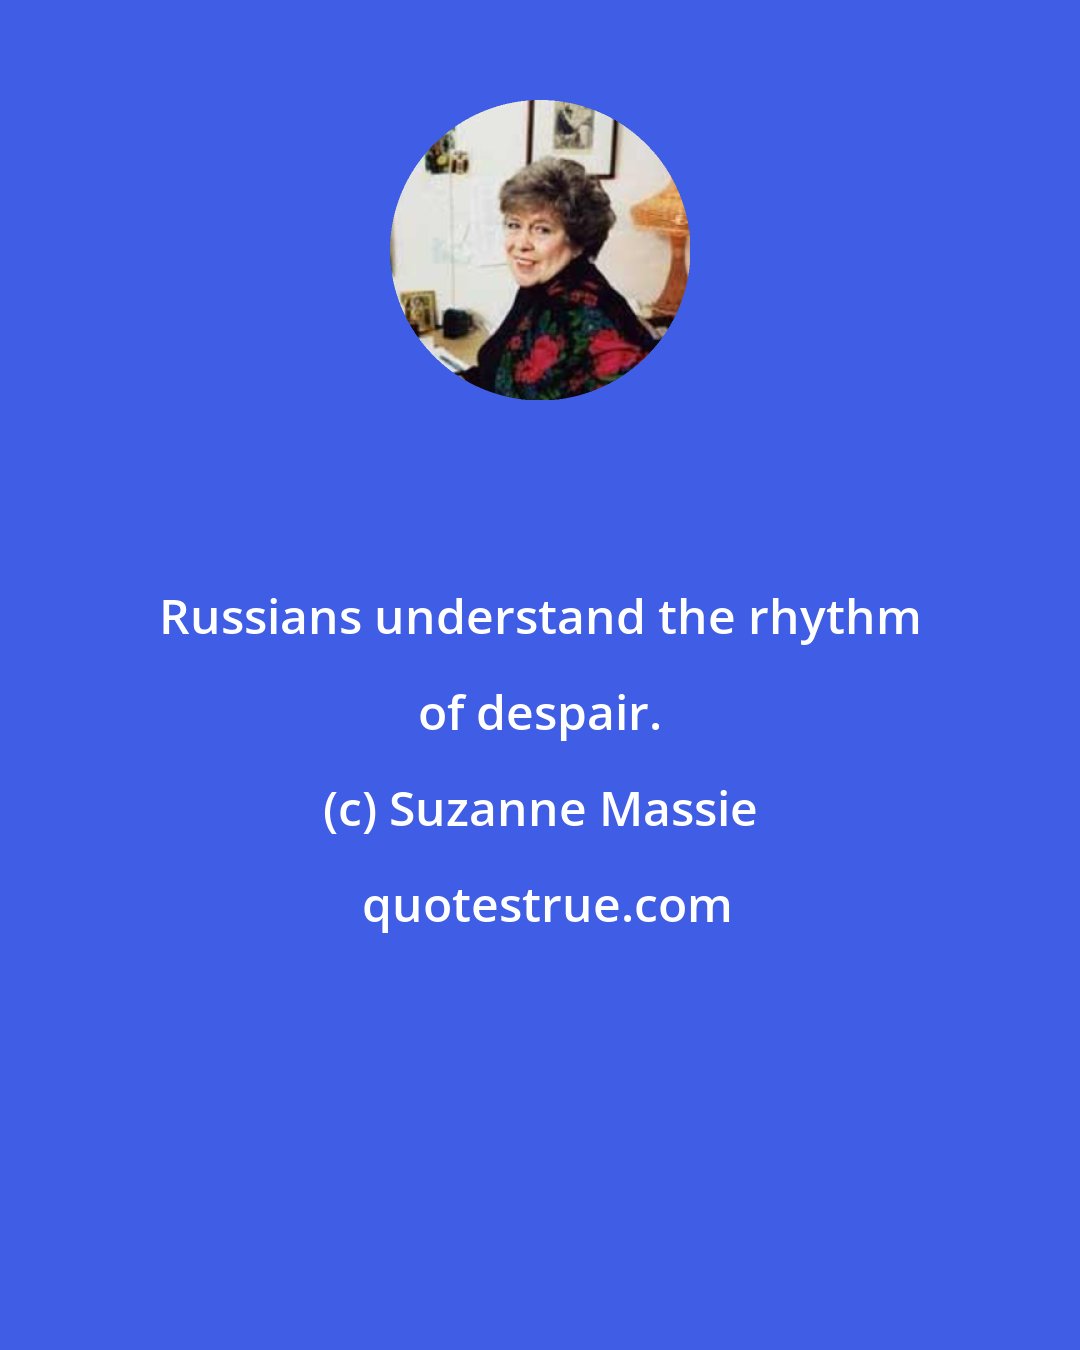 Suzanne Massie: Russians understand the rhythm of despair.